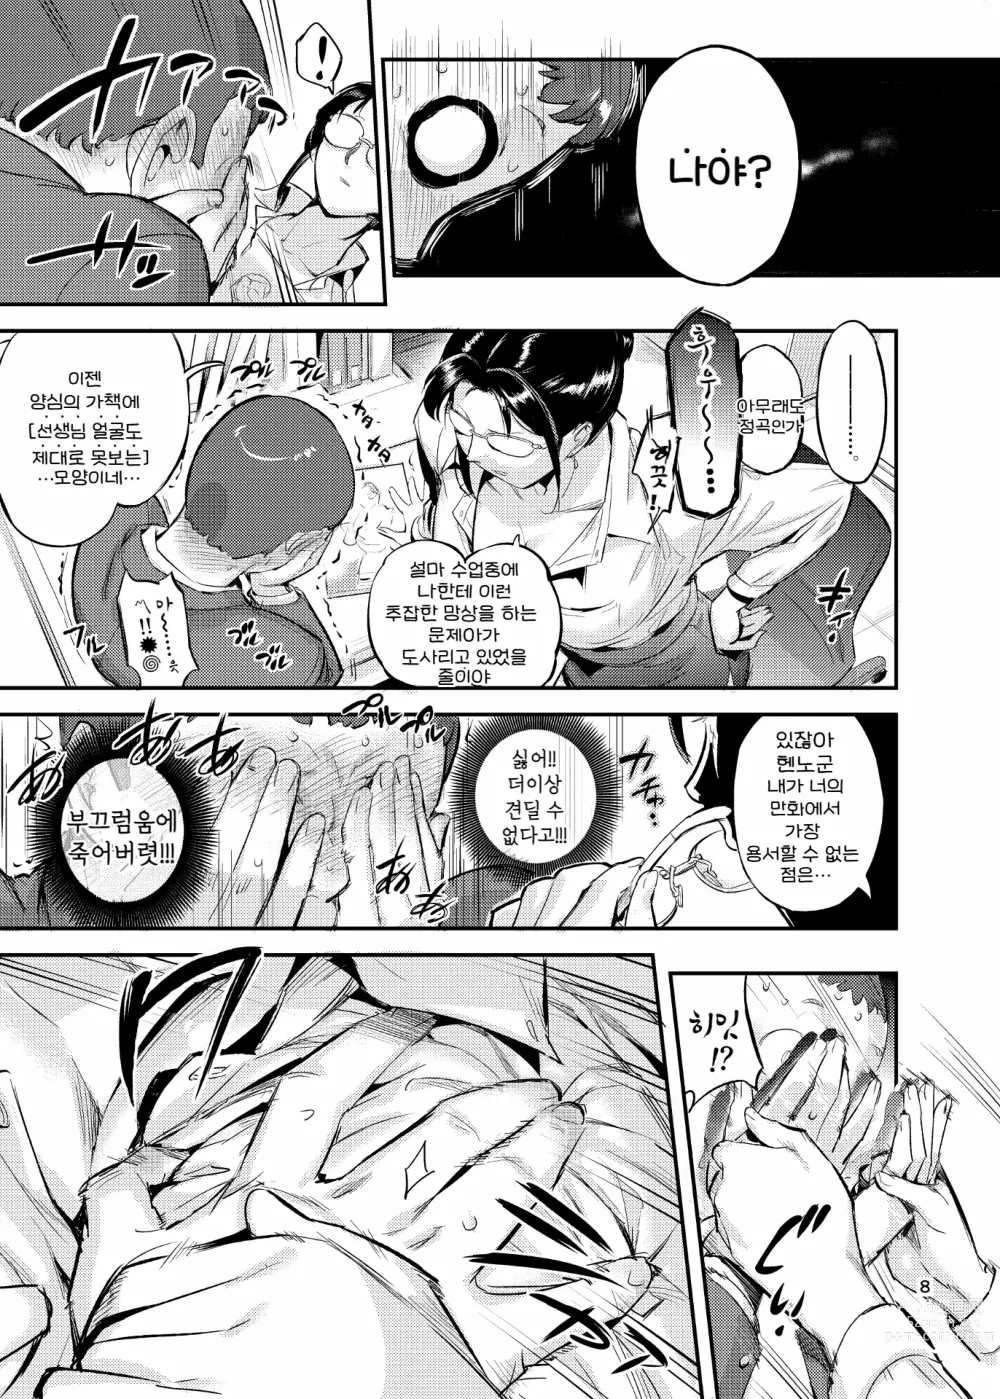 Page 8 of doujinshi 생활지도의 마츠노하는 노려본 학생을 잡아먹고 있다